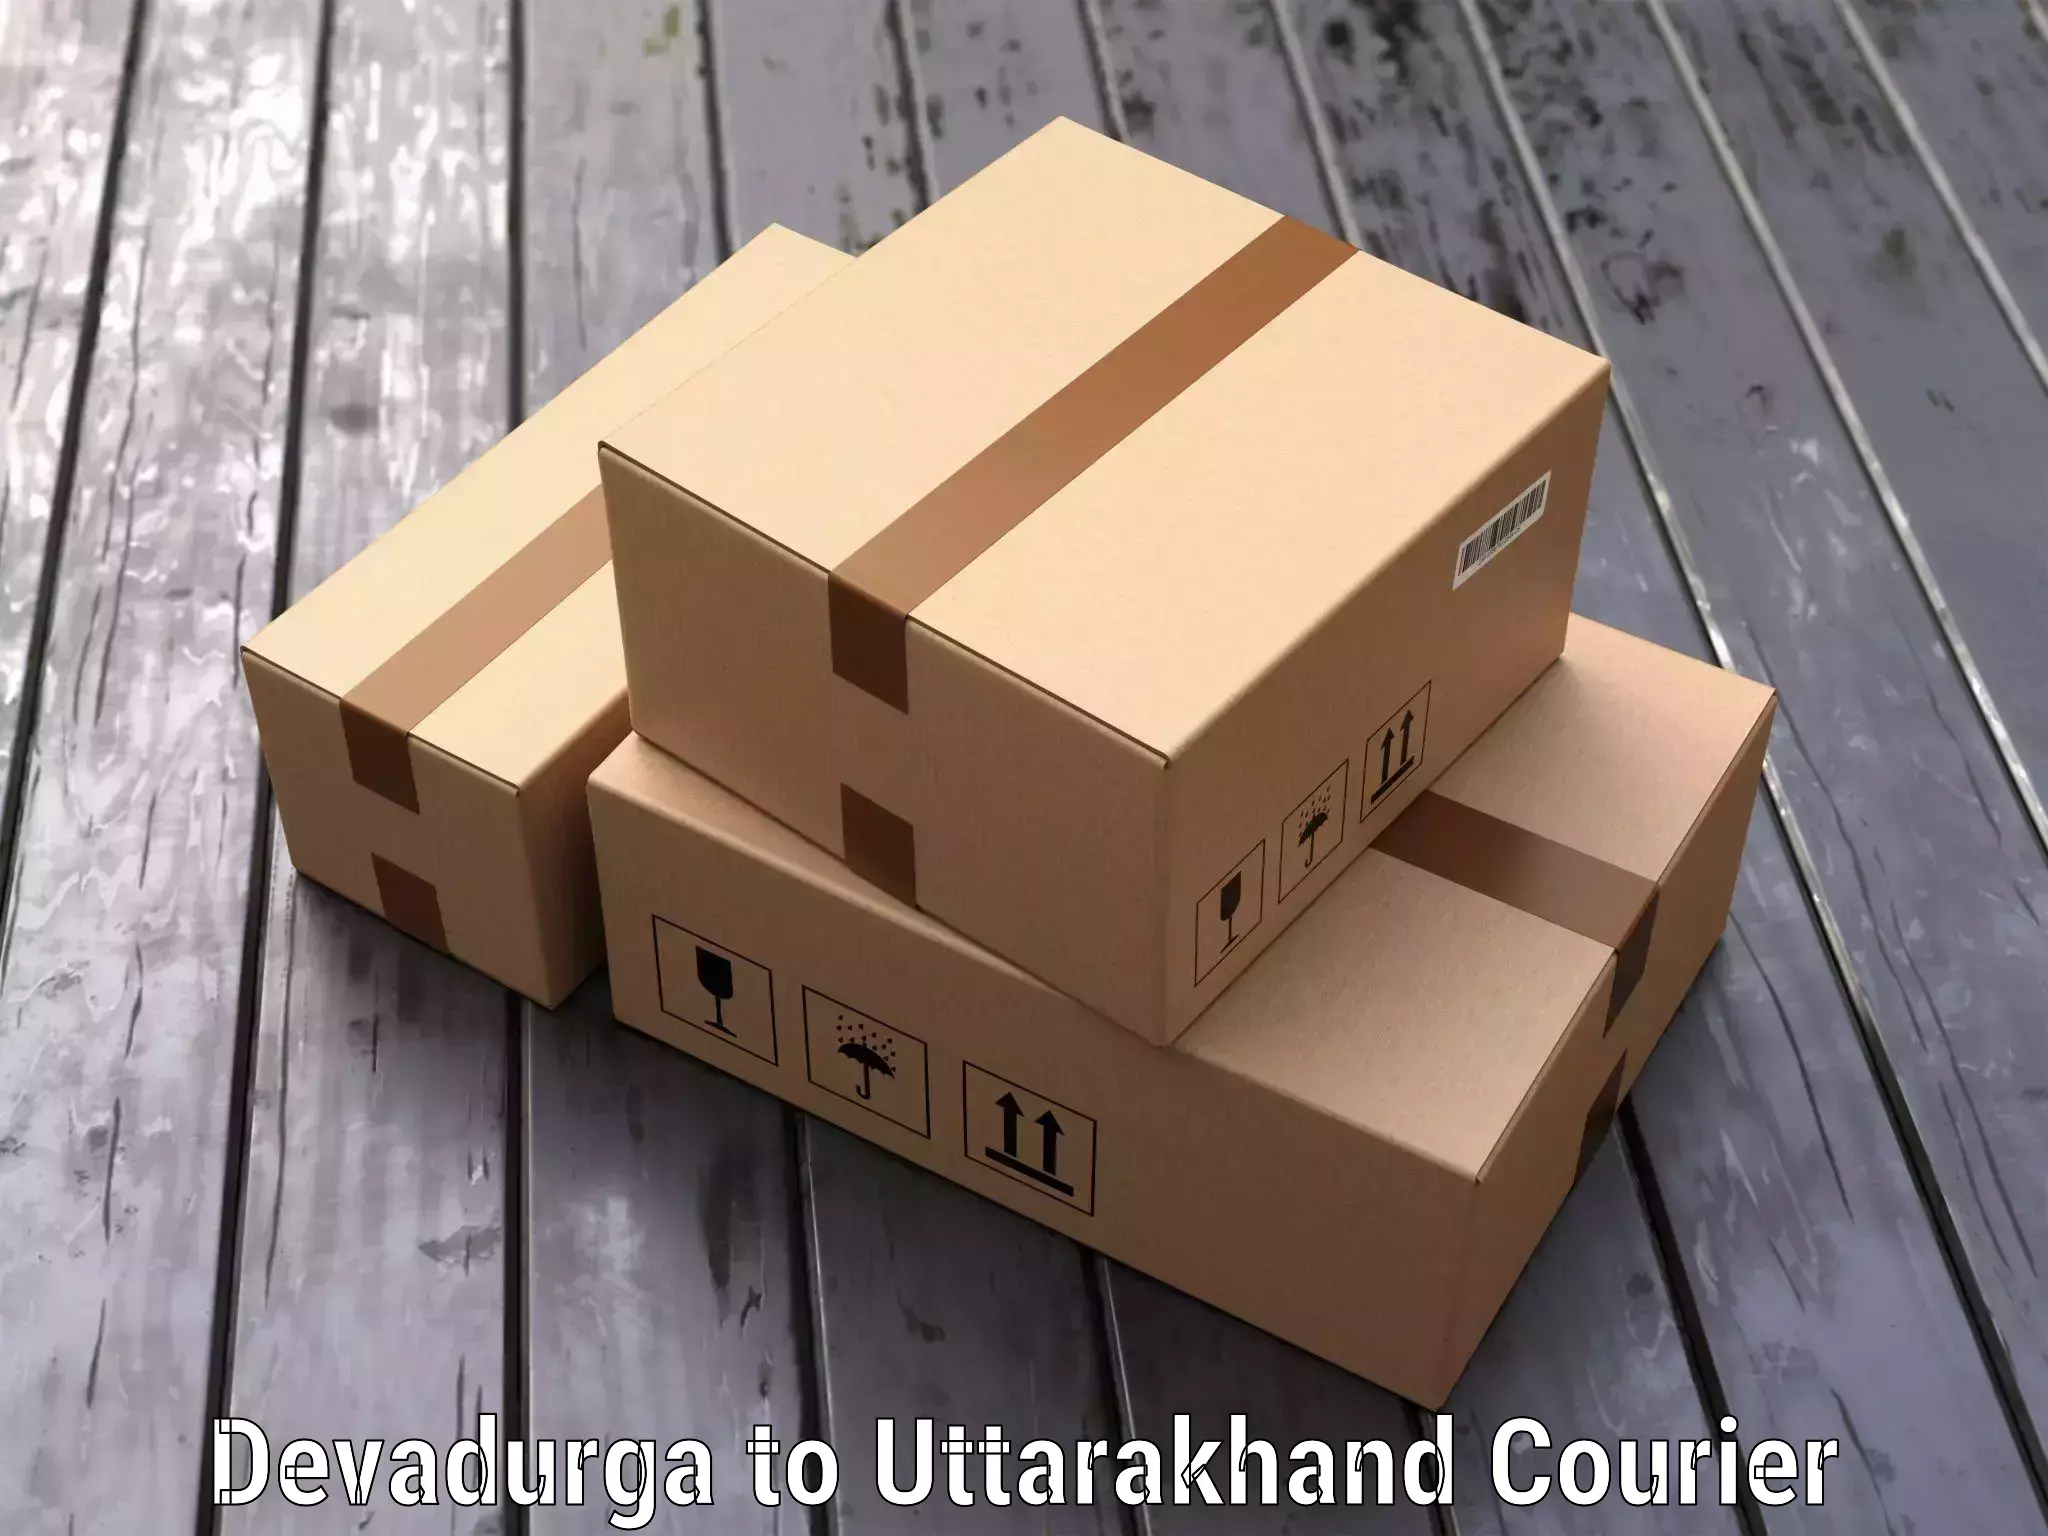 Luggage shipping specialists Devadurga to Uttarakhand